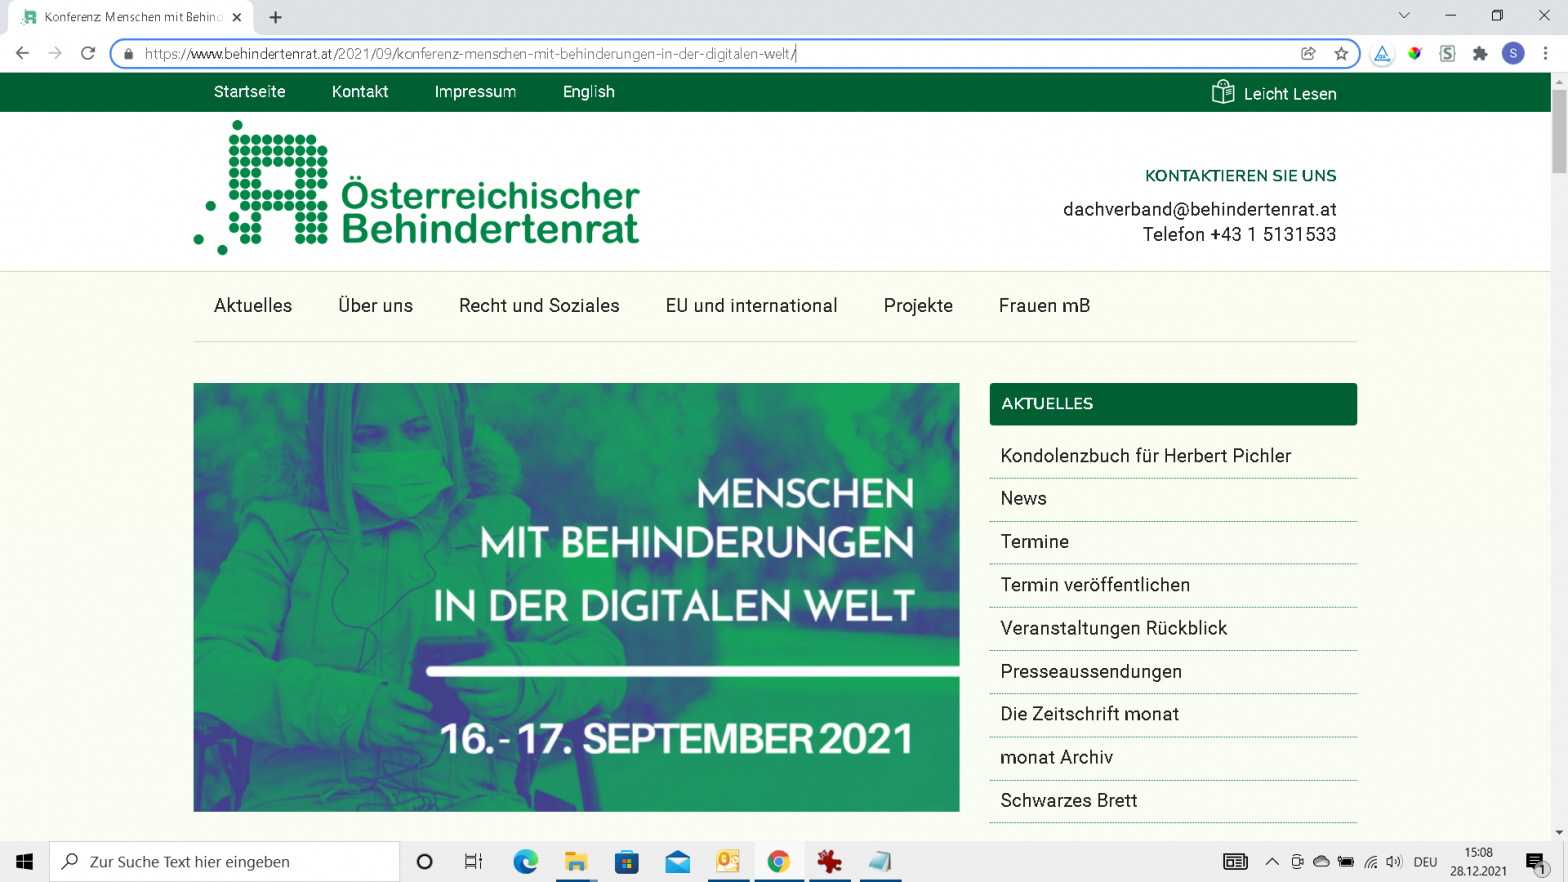 Screenshot ÖBR Konferenz